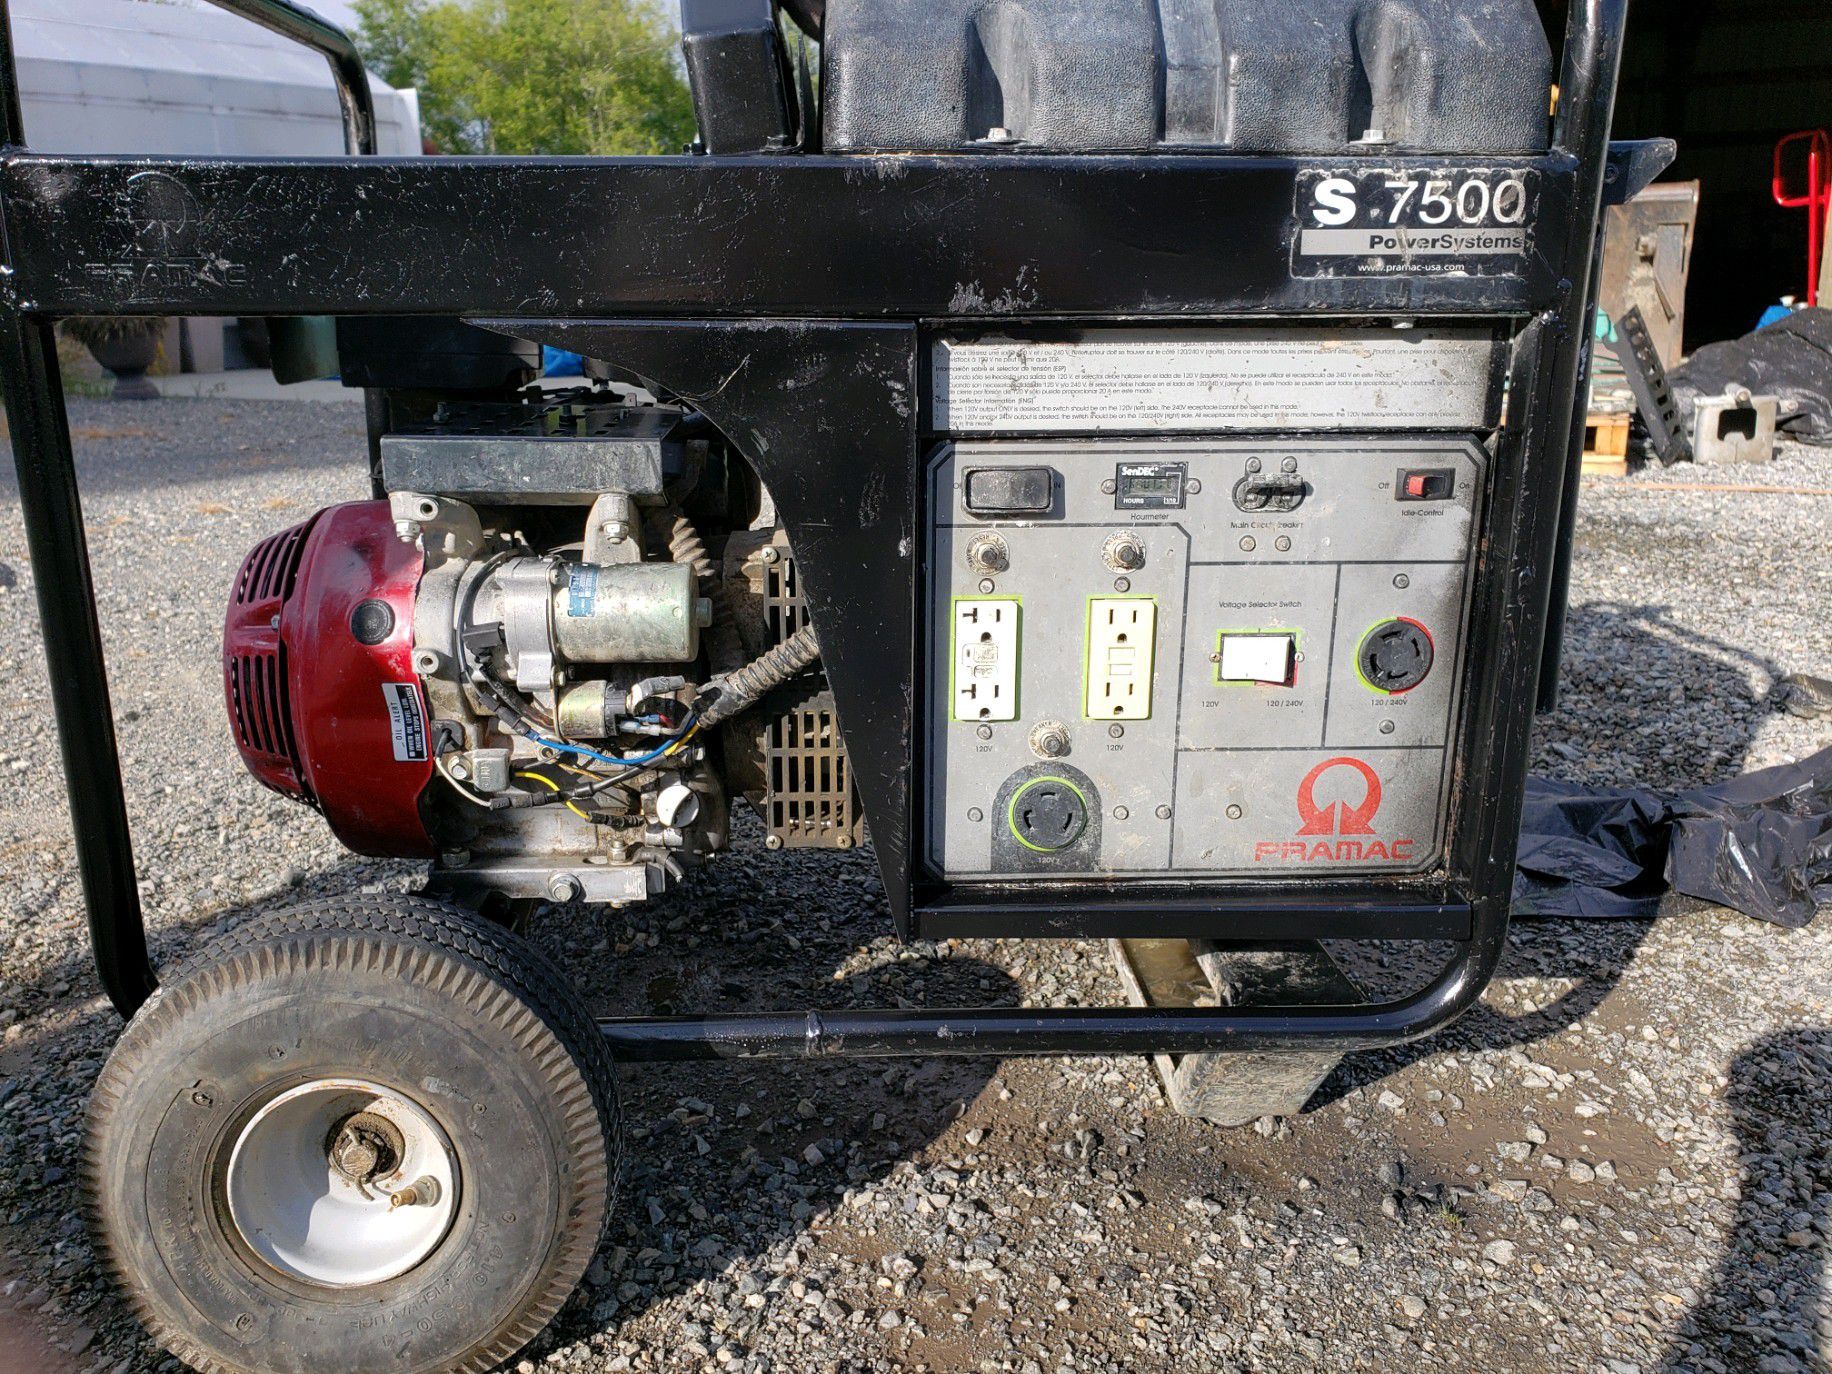 7500 Watt Pramac Generator w/ Honda Generator